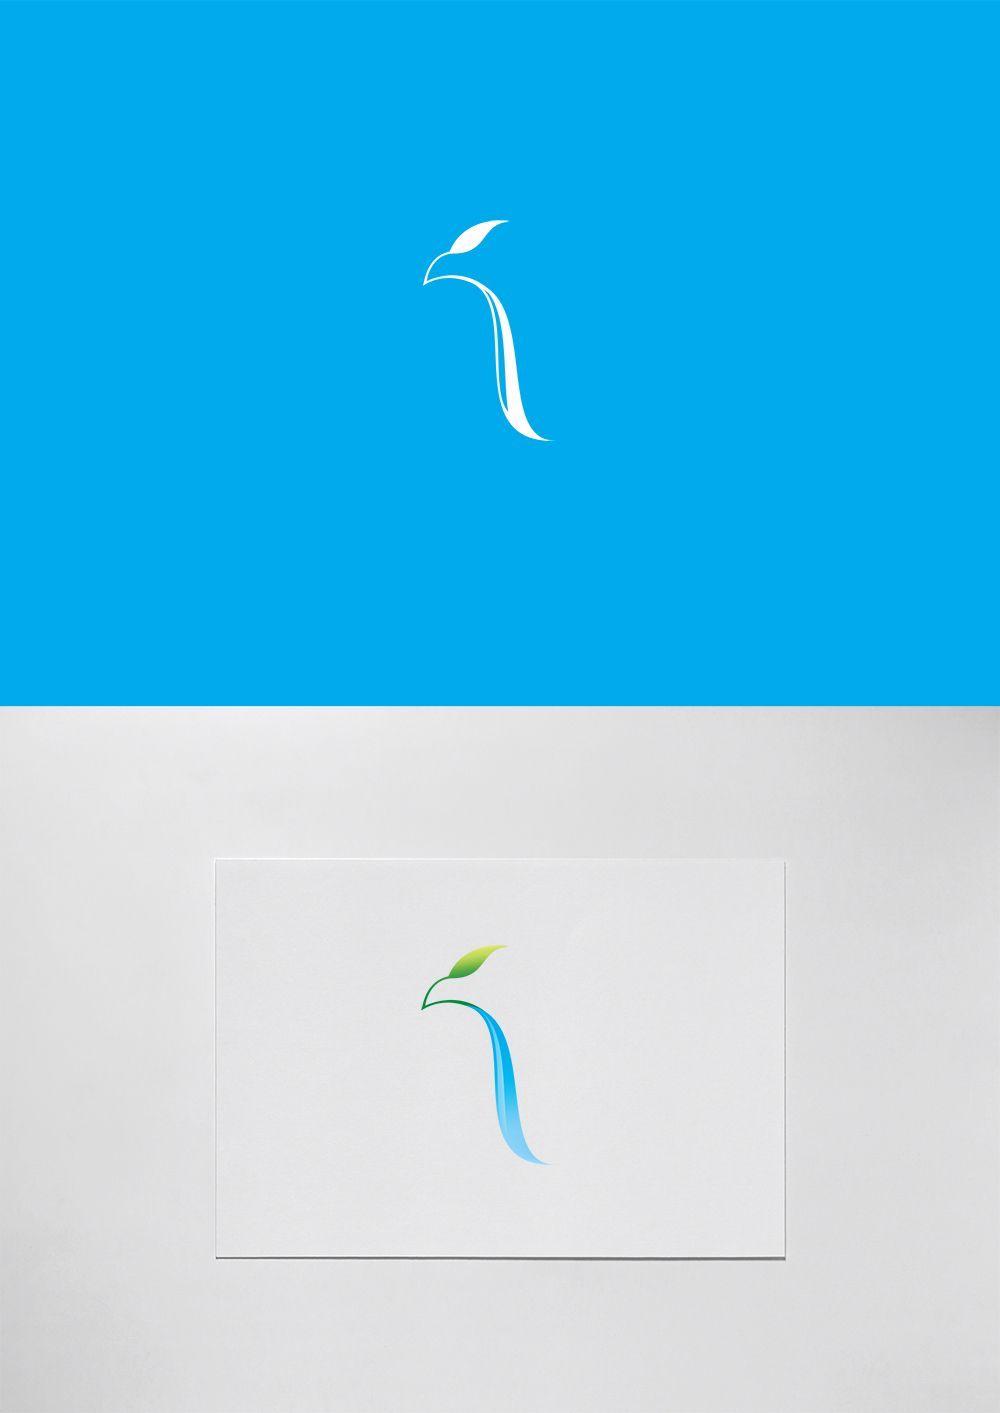 Waterfall Logo - Ripaljka Waterfall / Sokobanja (Hawk city) / SHONSKI art and design